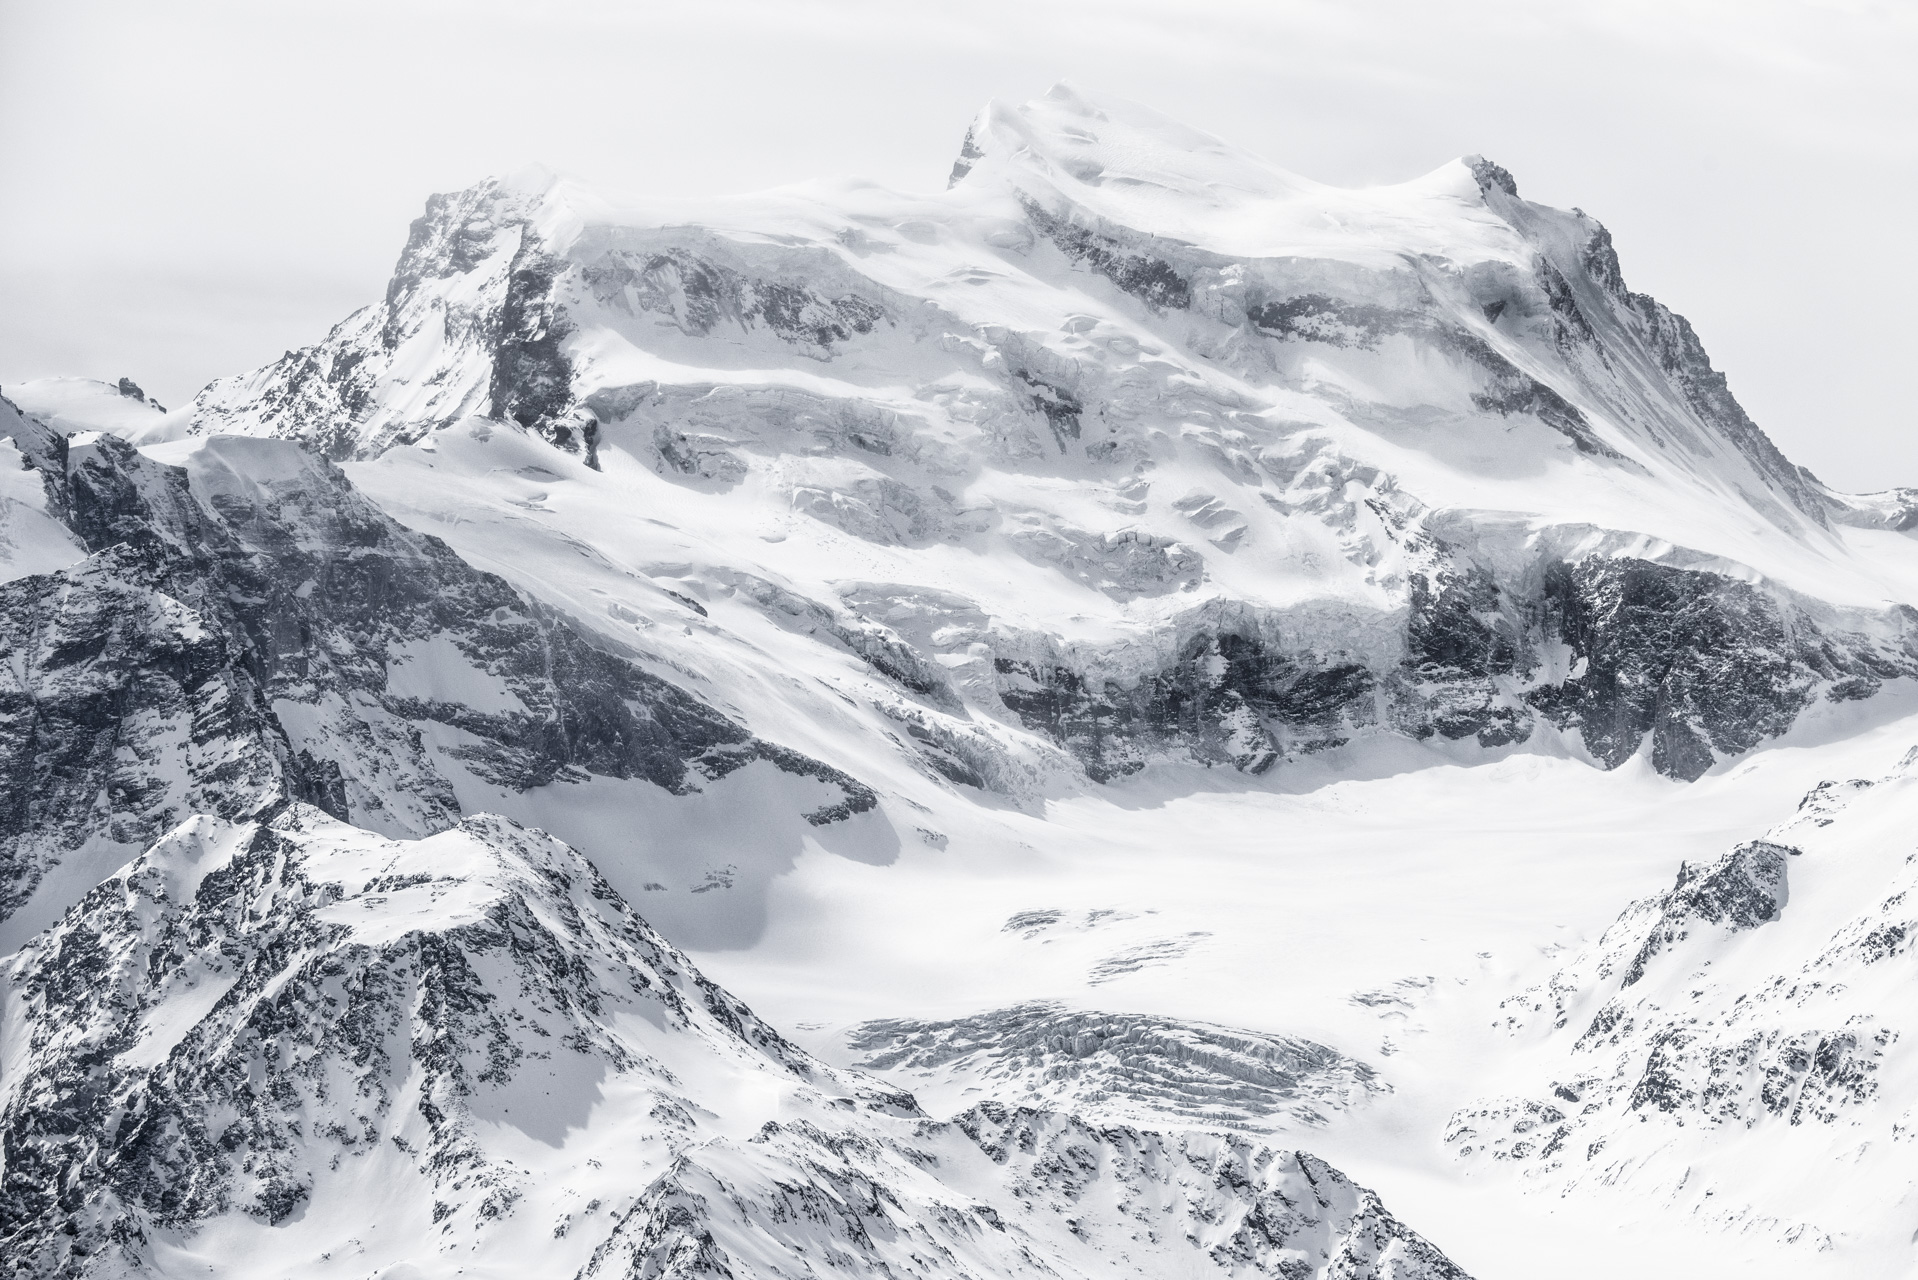 Grand Combin noir et blanc - Crans Montana Suisse- Vallée de zermatt Engadine, sommet de montagne dans les Alpes Valaisannes